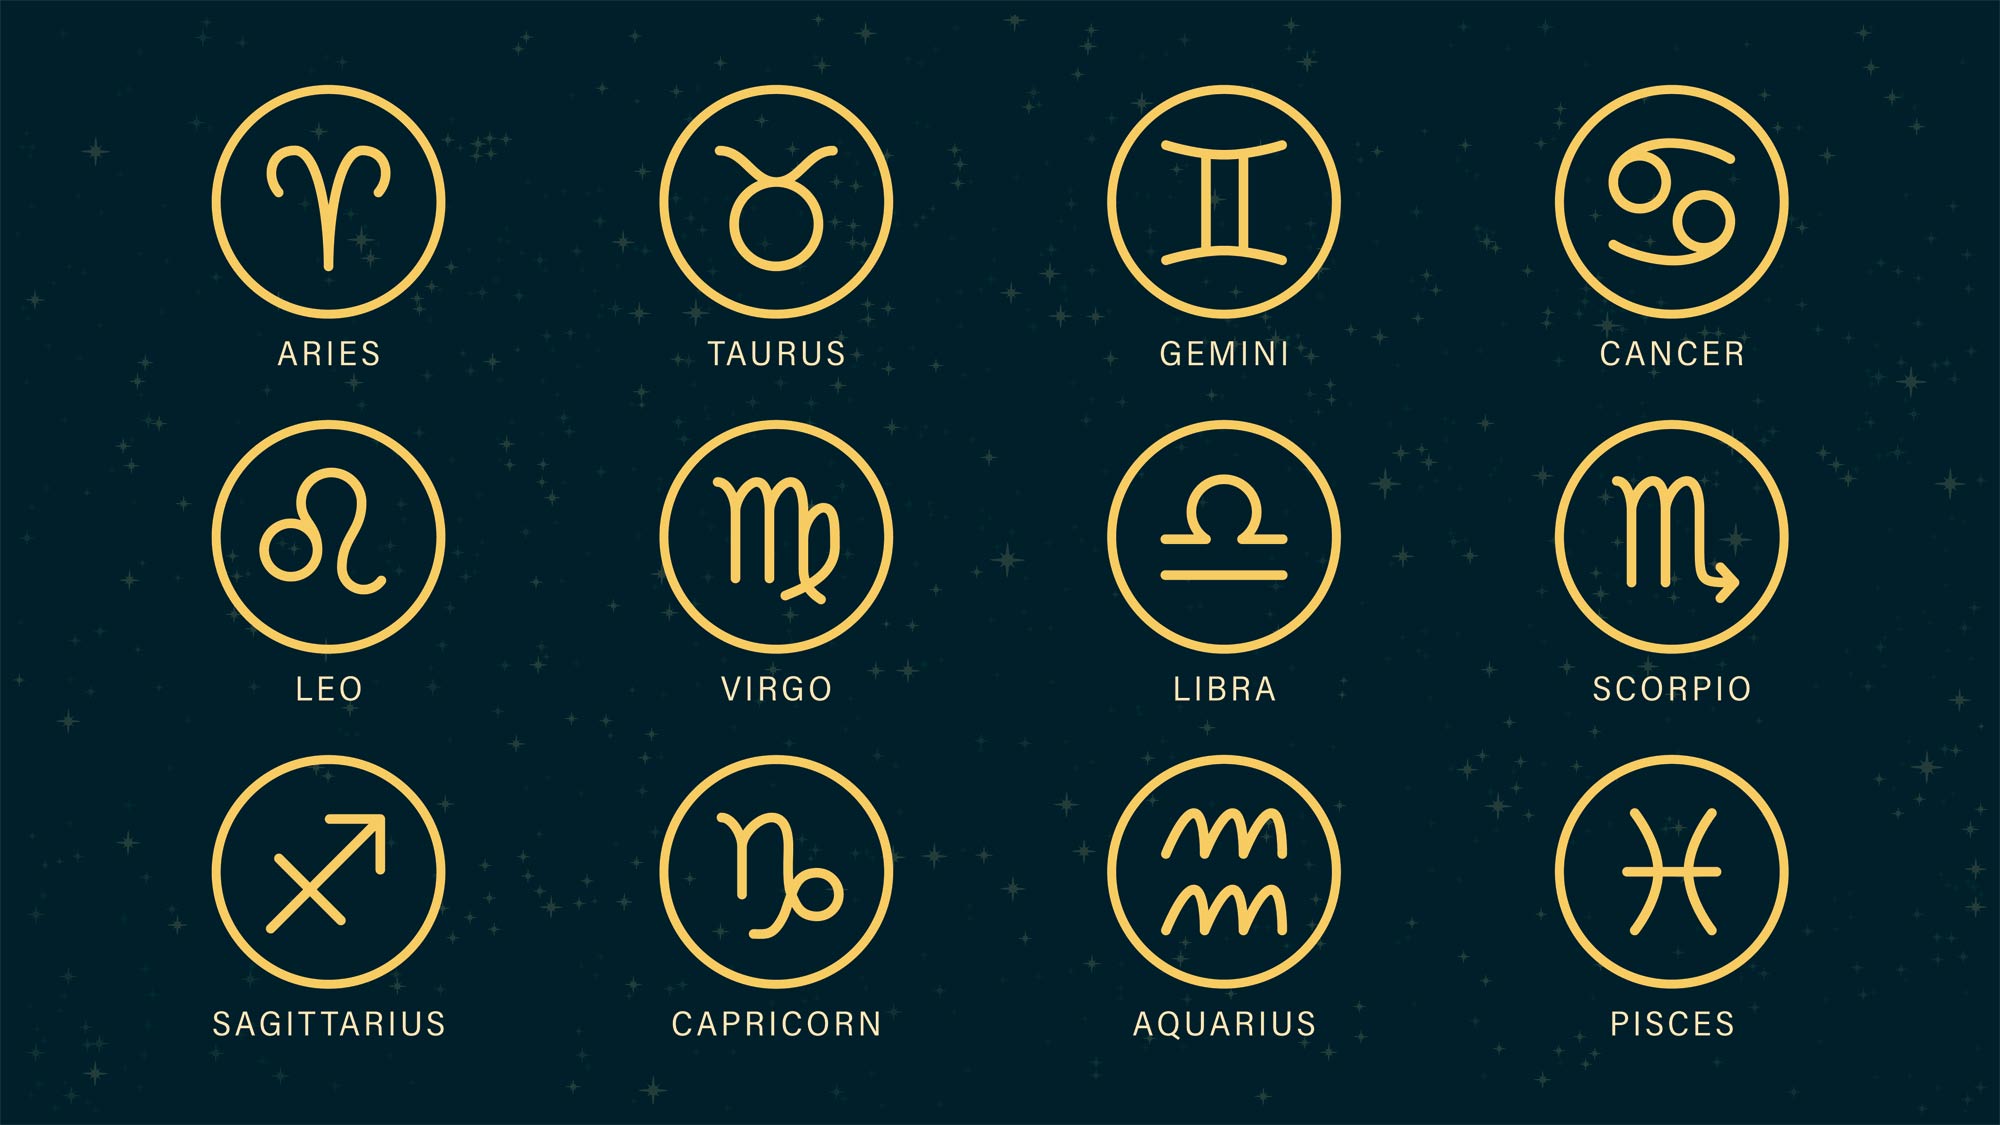 Heti horoszkóp a november 15-i hétre - szerelem, egészség, pénz - Blikk